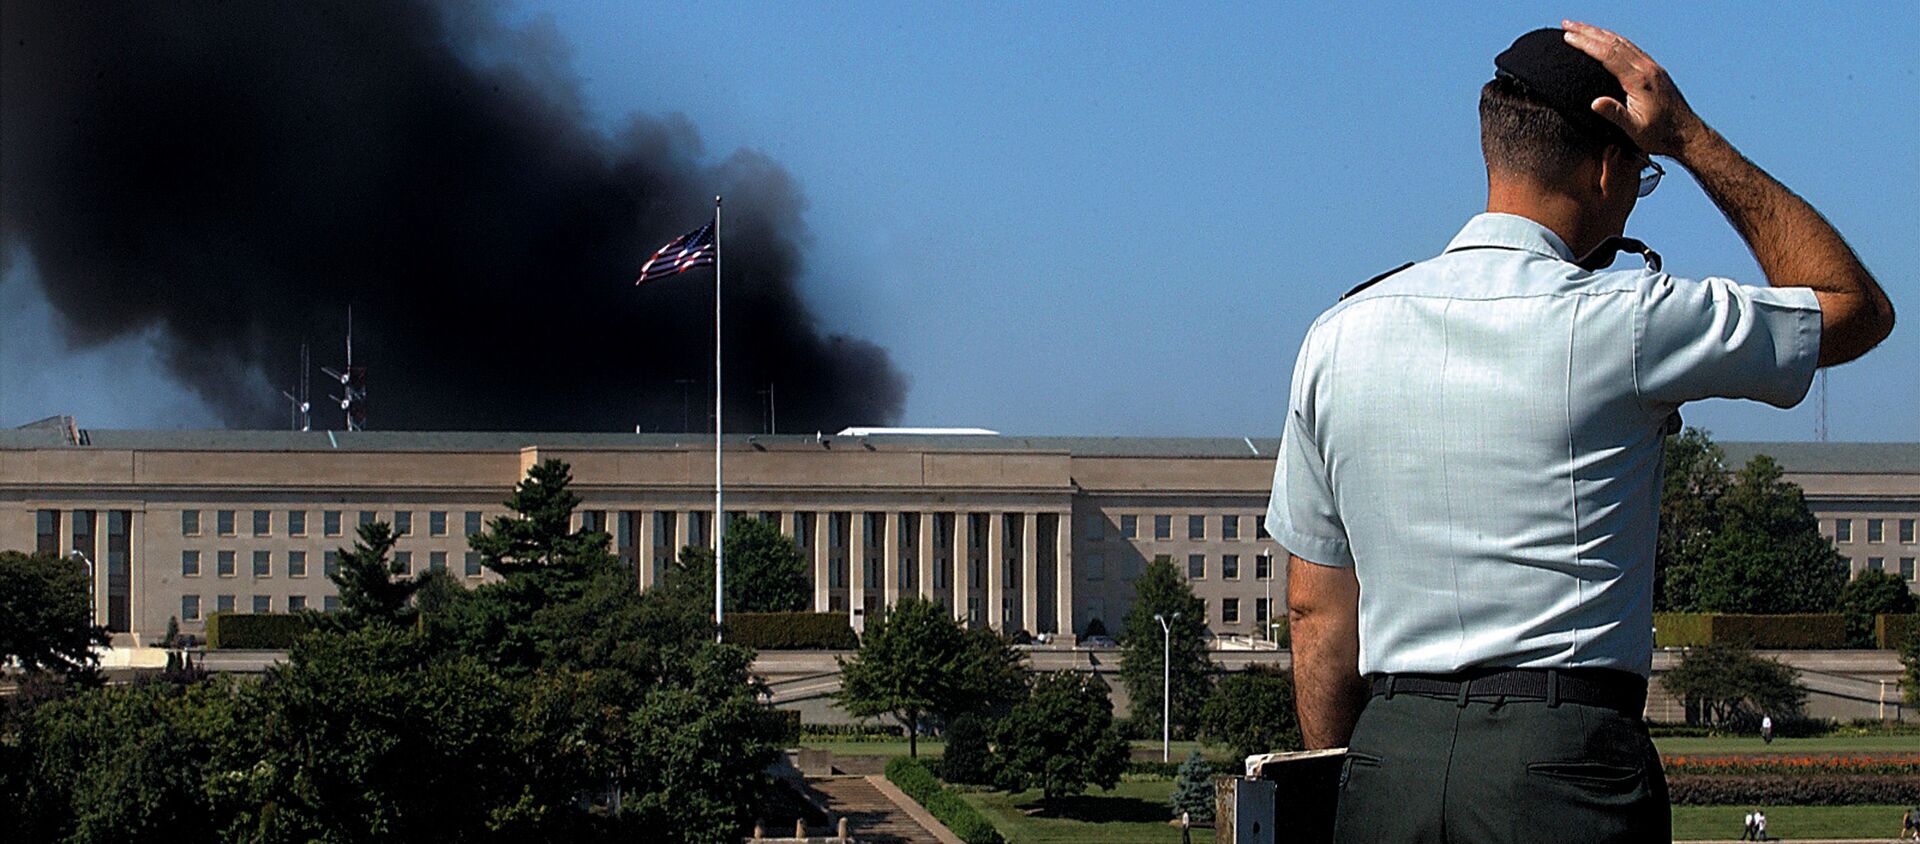  Сотрудник у здания Пентагона после теракта 11 сентября, США - Sputnik Абхазия, 1920, 06.09.2021